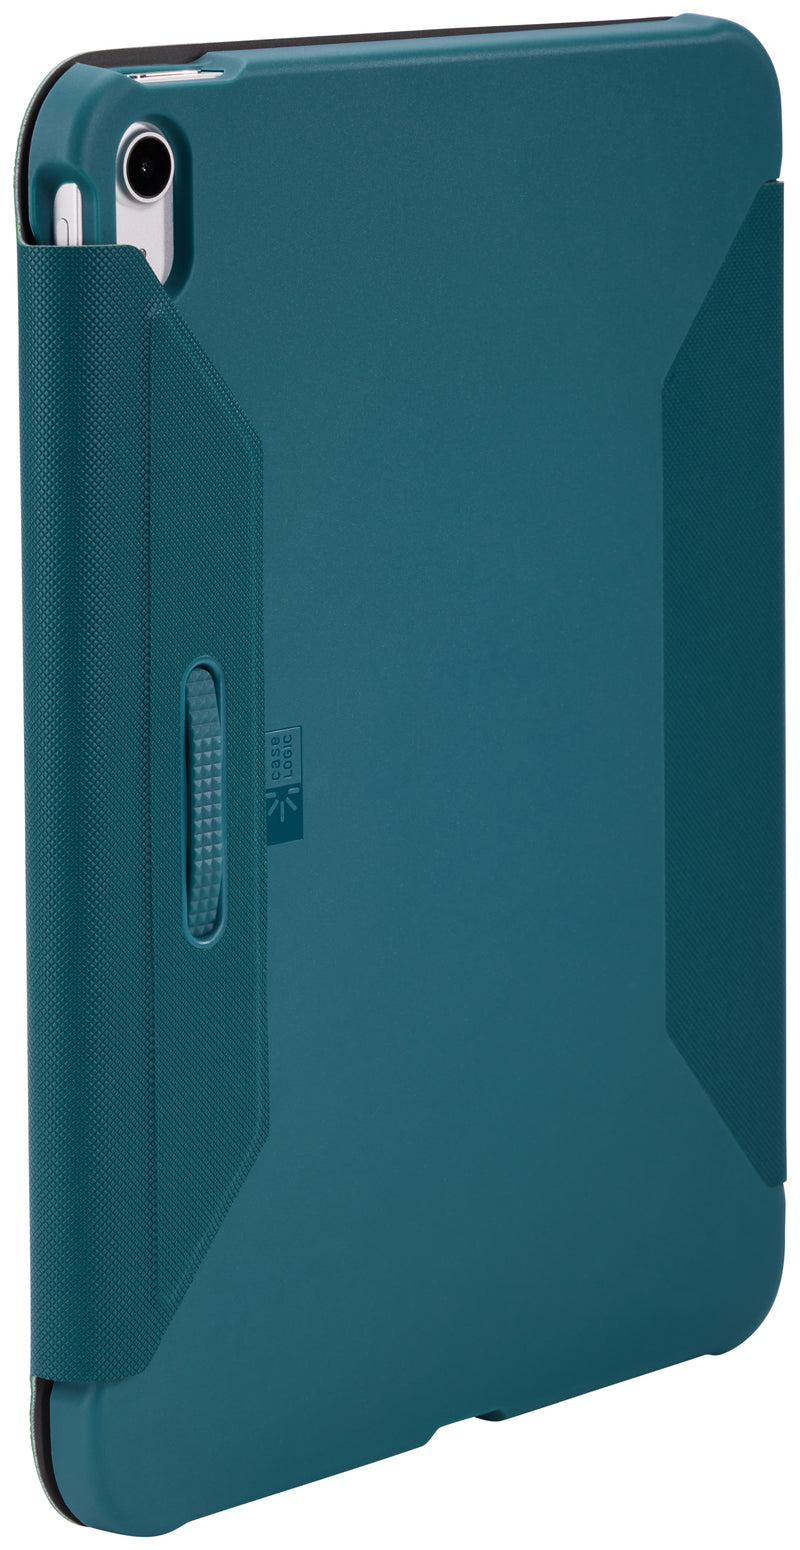 Чехол Logic 4972 Snapview для iPad 10.2 CSIE-2156 с патиной синего цвета 